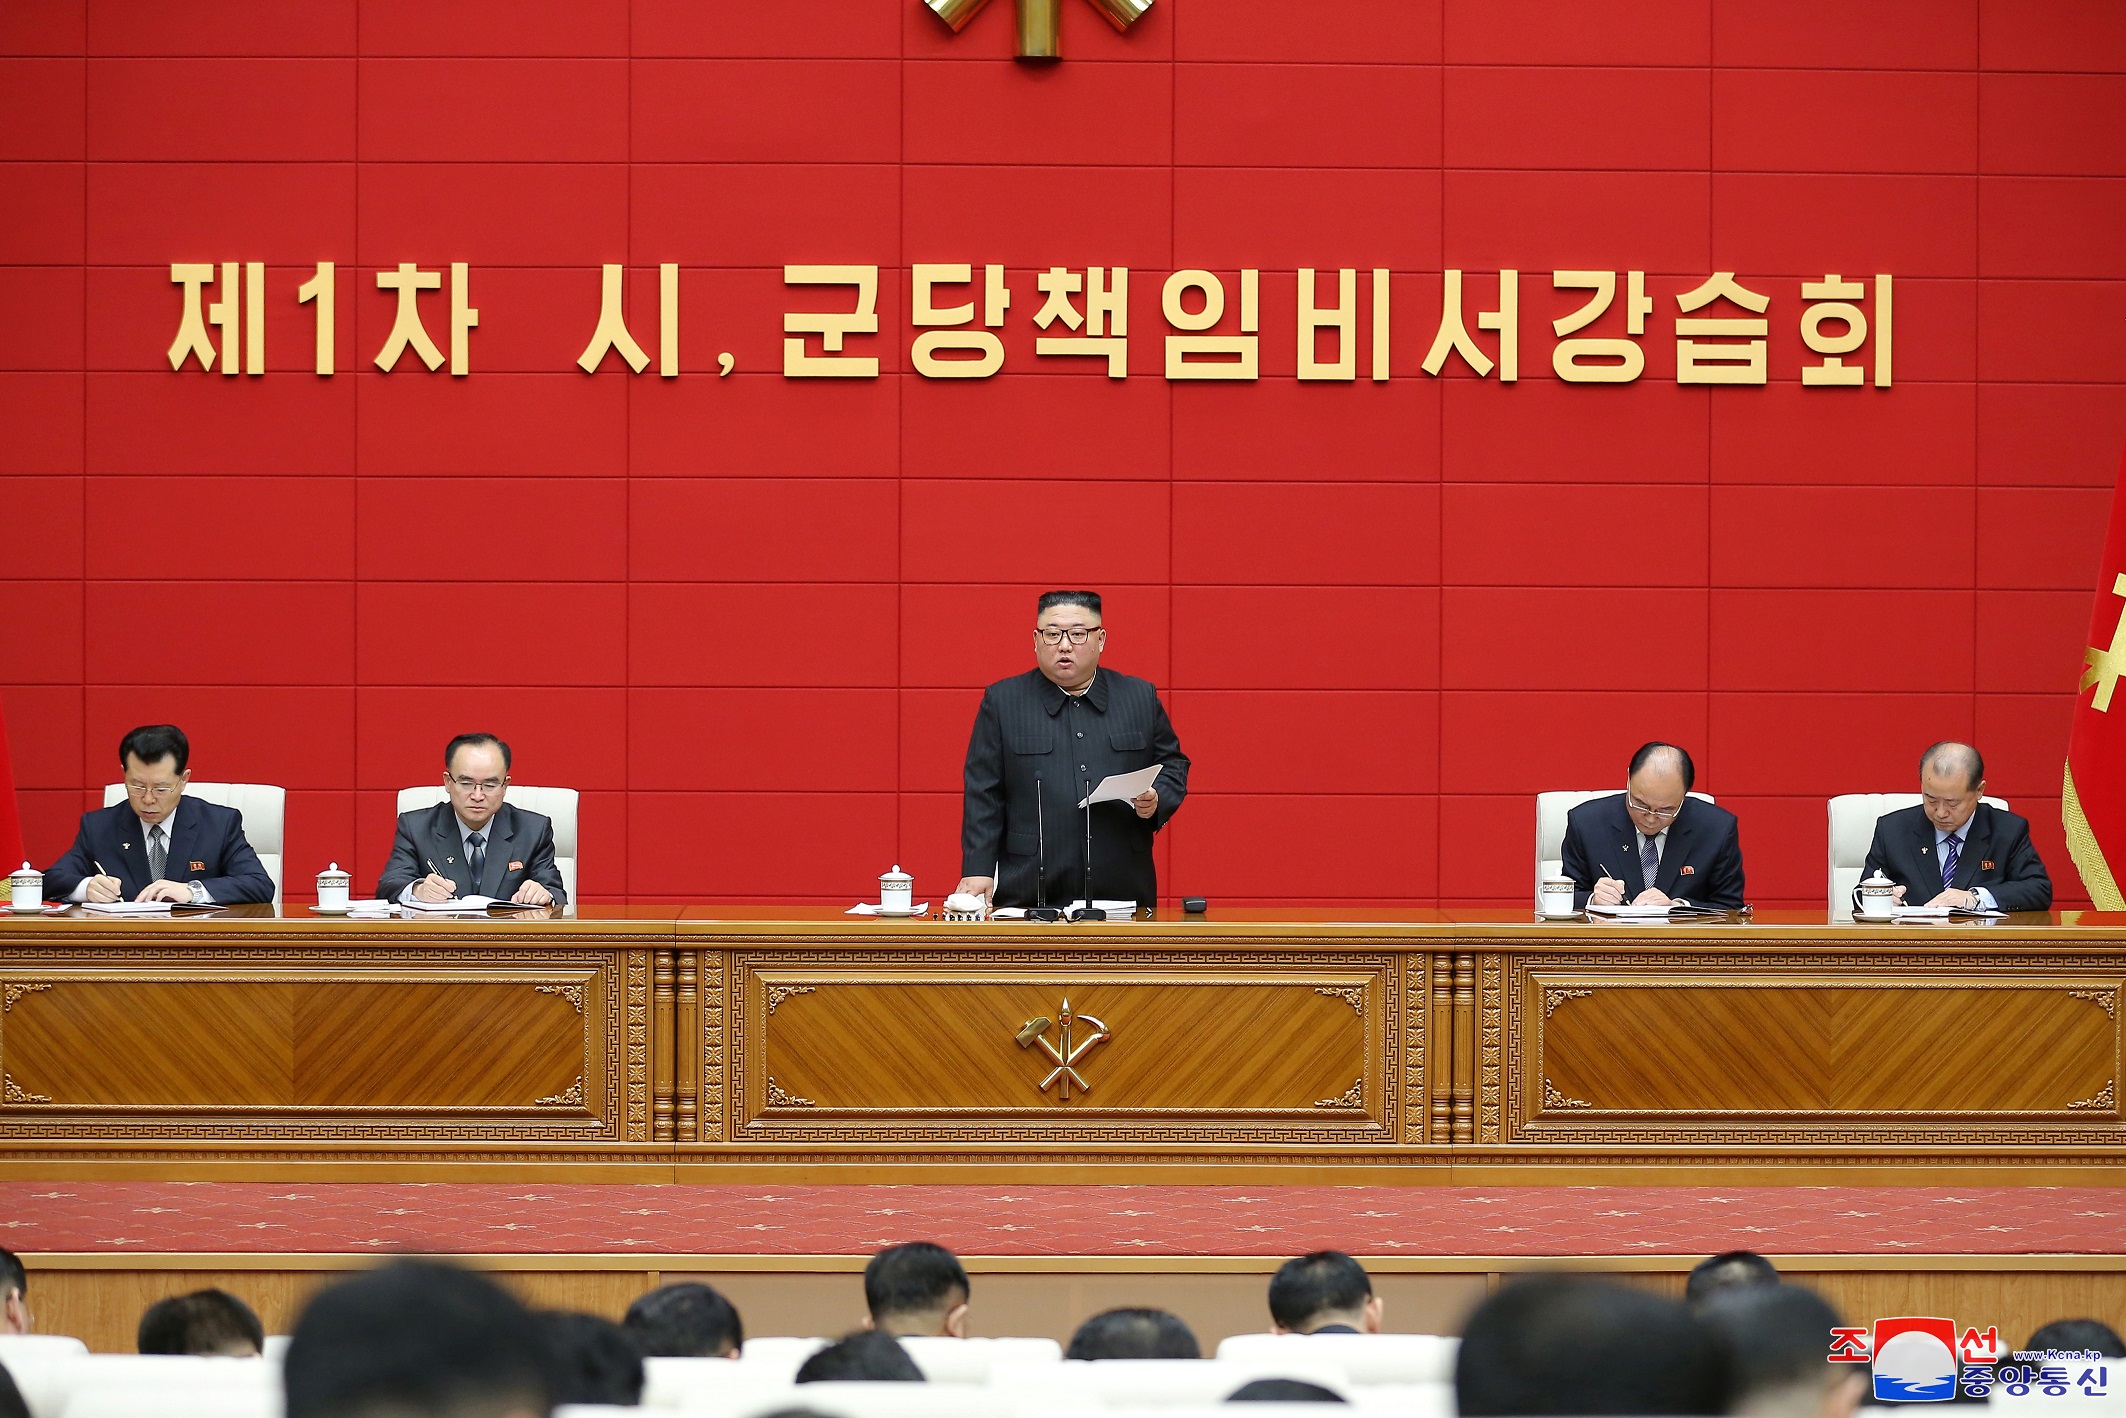 De leider van Noord-Korea, Kim Jong-un, spreekt tijdens de eerste korte cursus voor hoofdsecretarissen van de stads- en provinciale partijcomités in Pyongyang, Noord-Korea